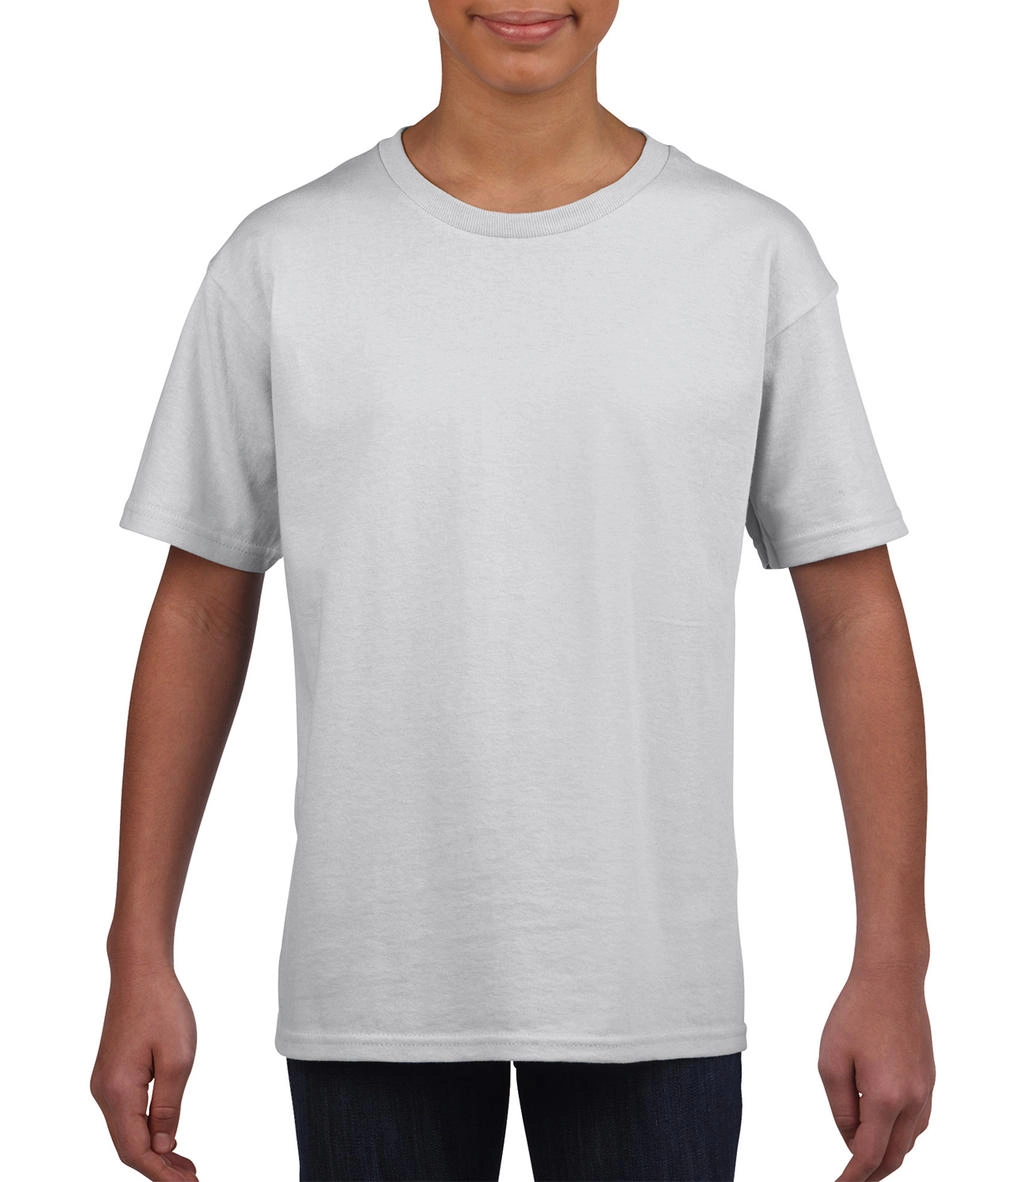 Softstyle® Youth T-Shirt zum Besticken und Bedrucken in der Farbe White mit Ihren Logo, Schriftzug oder Motiv.